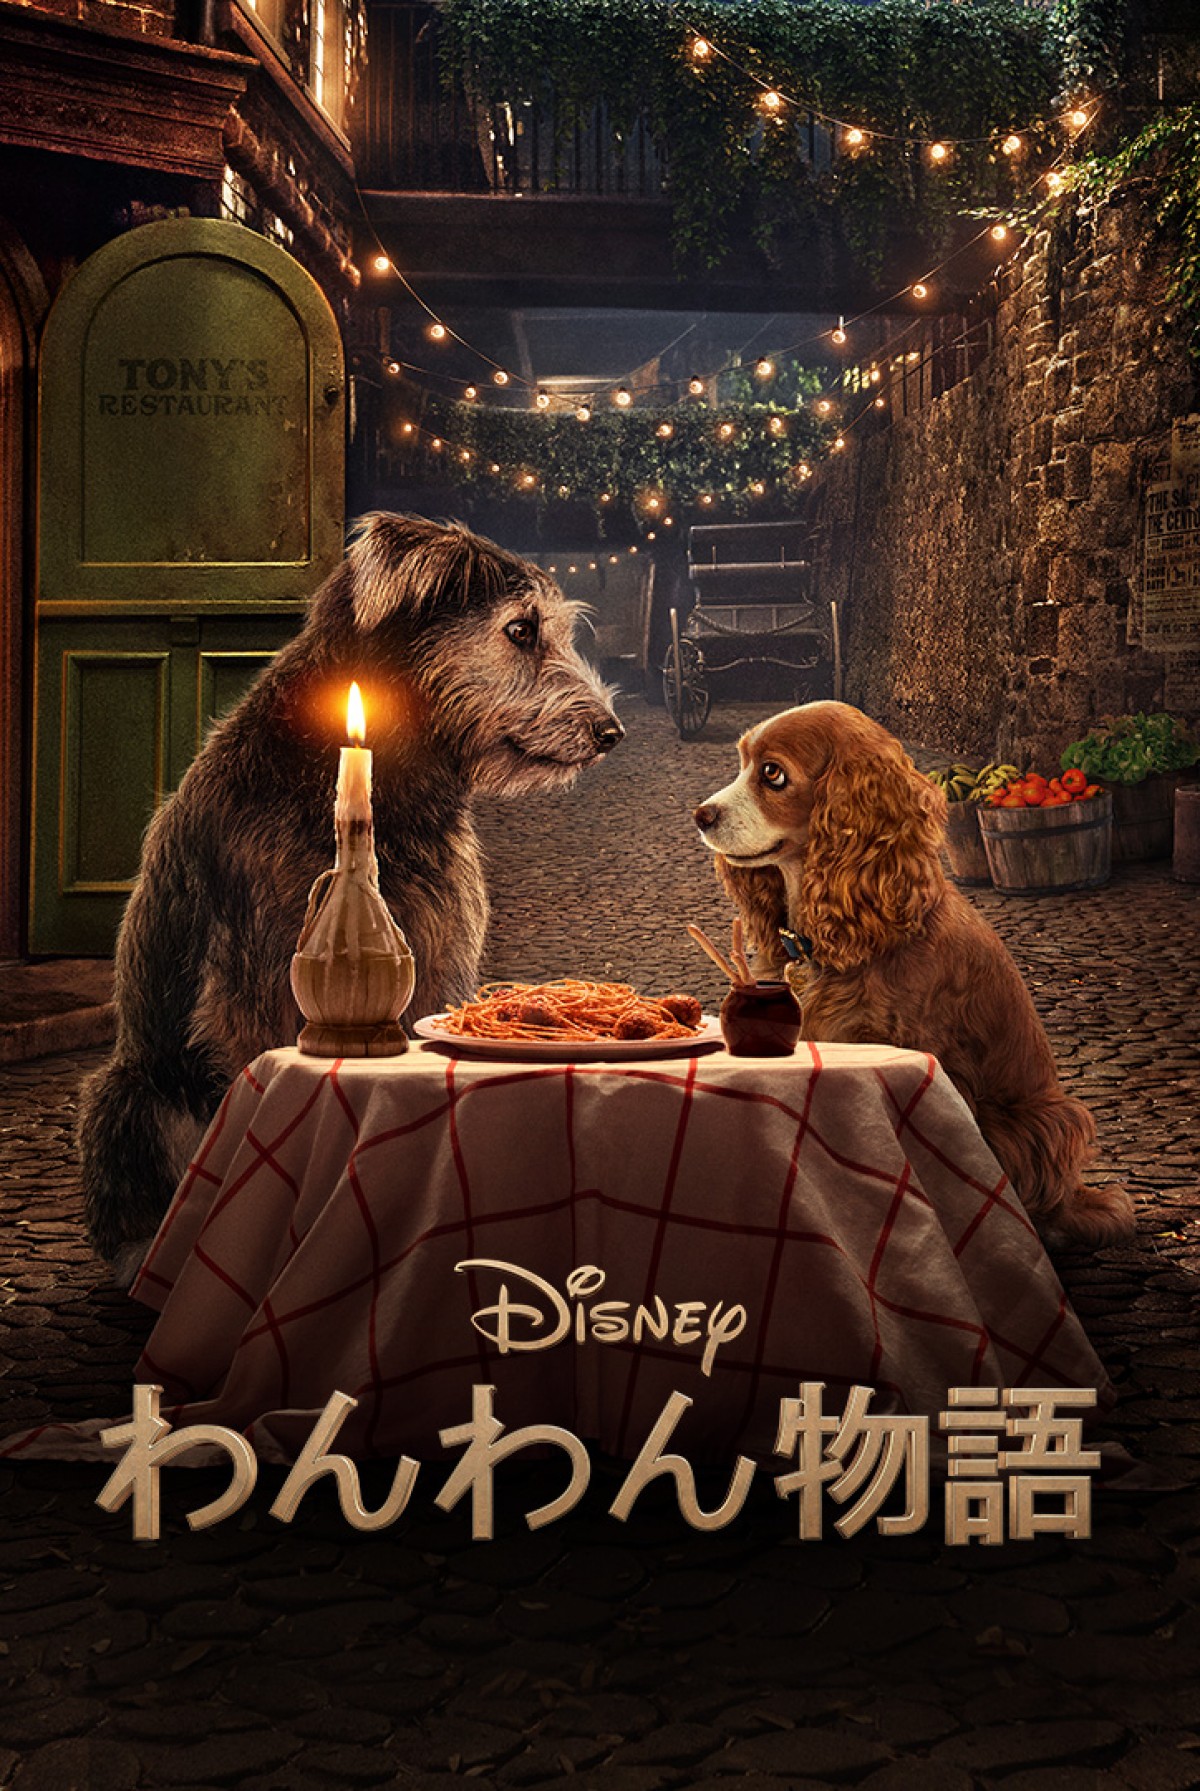 ディズニー わんわん物語 を完全実写化 本物の犬たちが演じる予告映像公開 年6月2日 映画 ニュース クランクイン